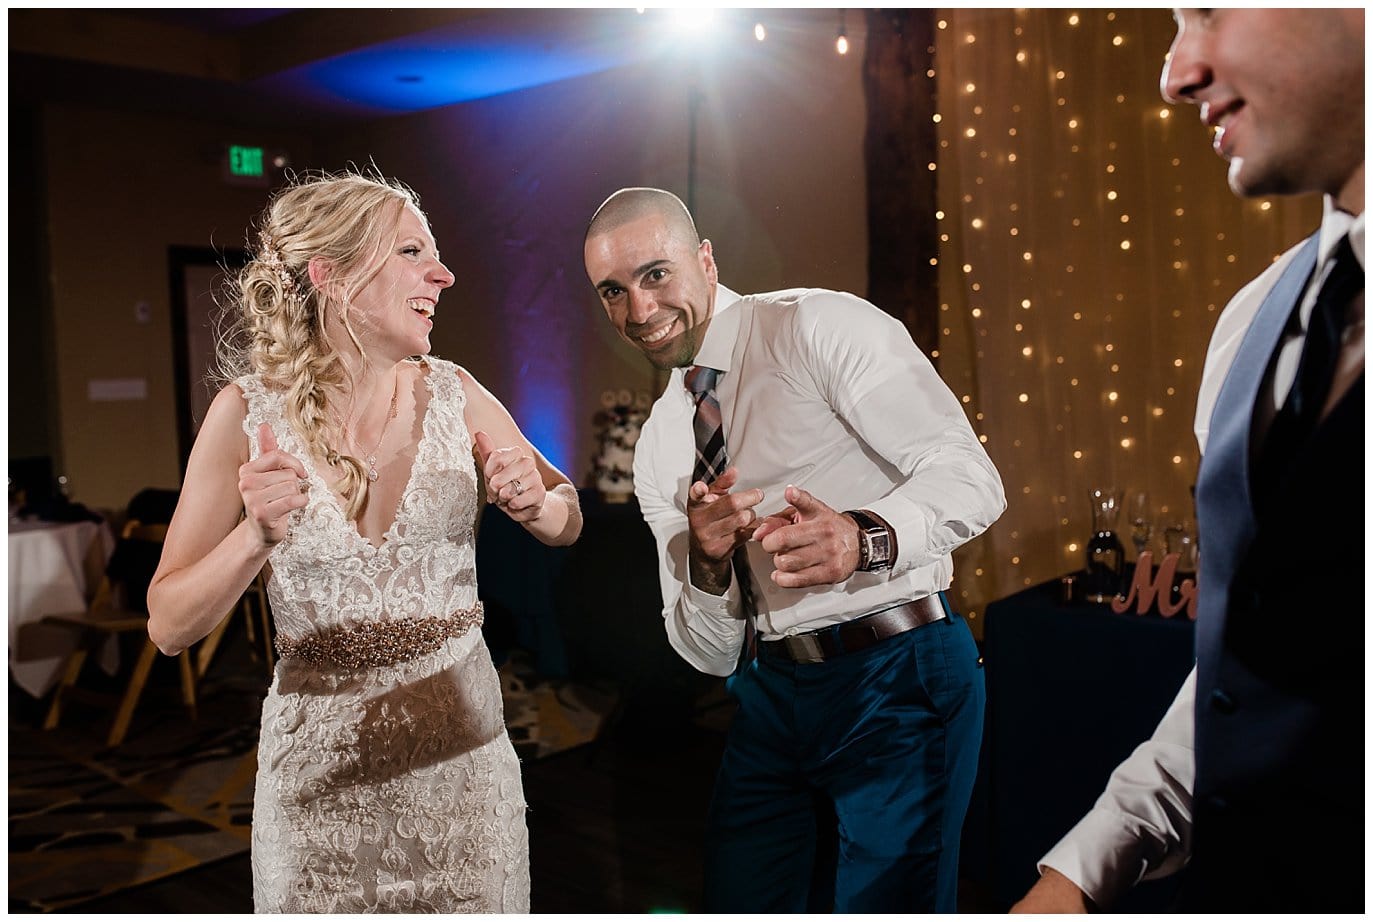 dancing at wedding reception photo